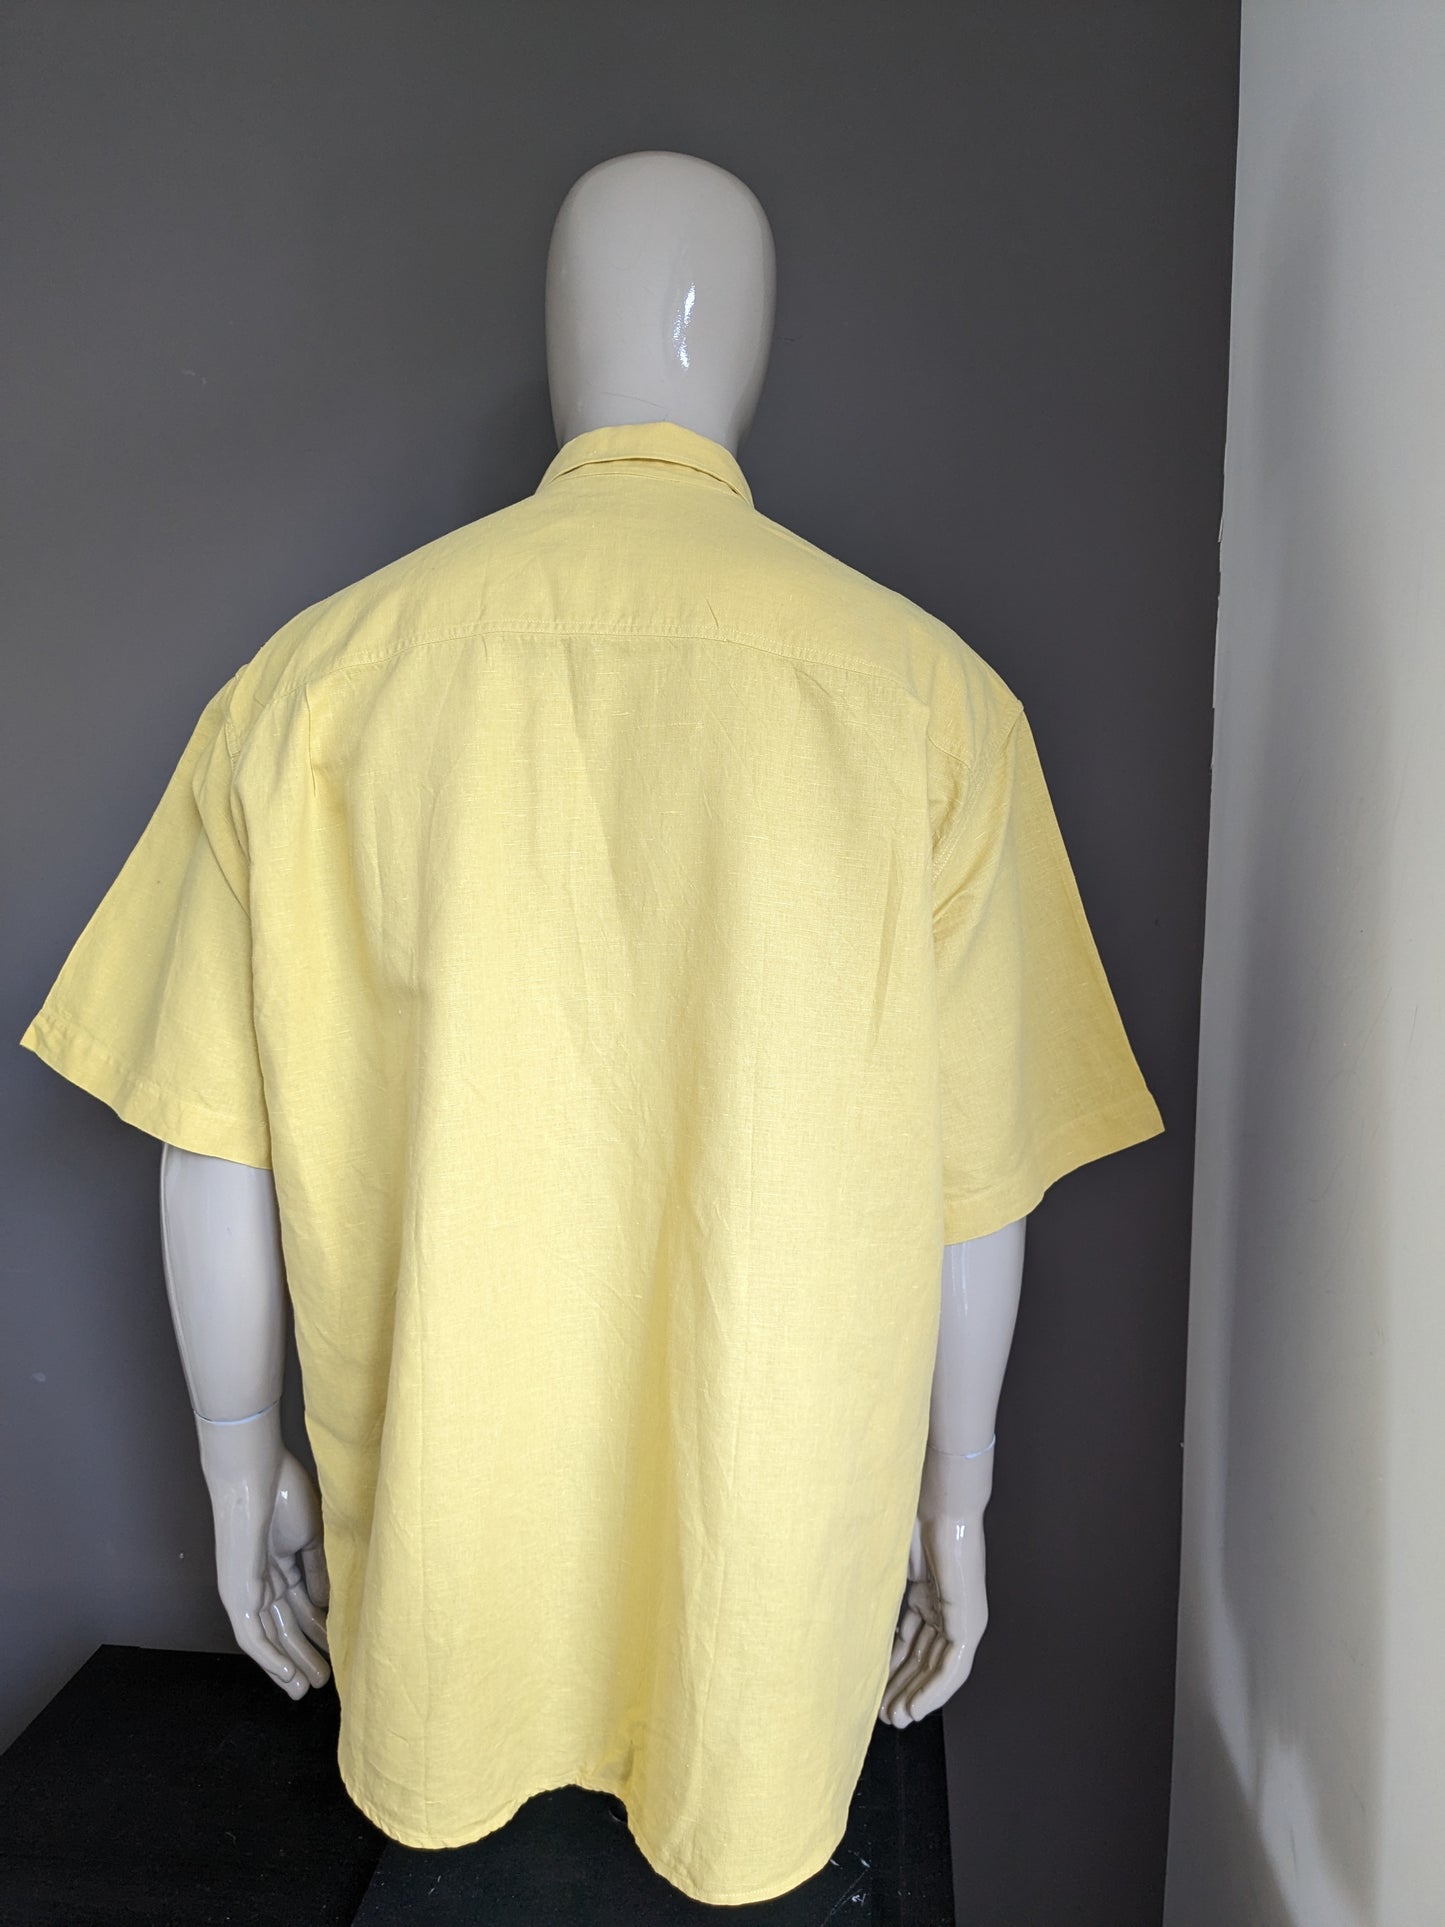 Vintage Pohland Exklusiv Linnen overhemd met groter knopen. Geel gekleurd. Maat 2XL / XXL.